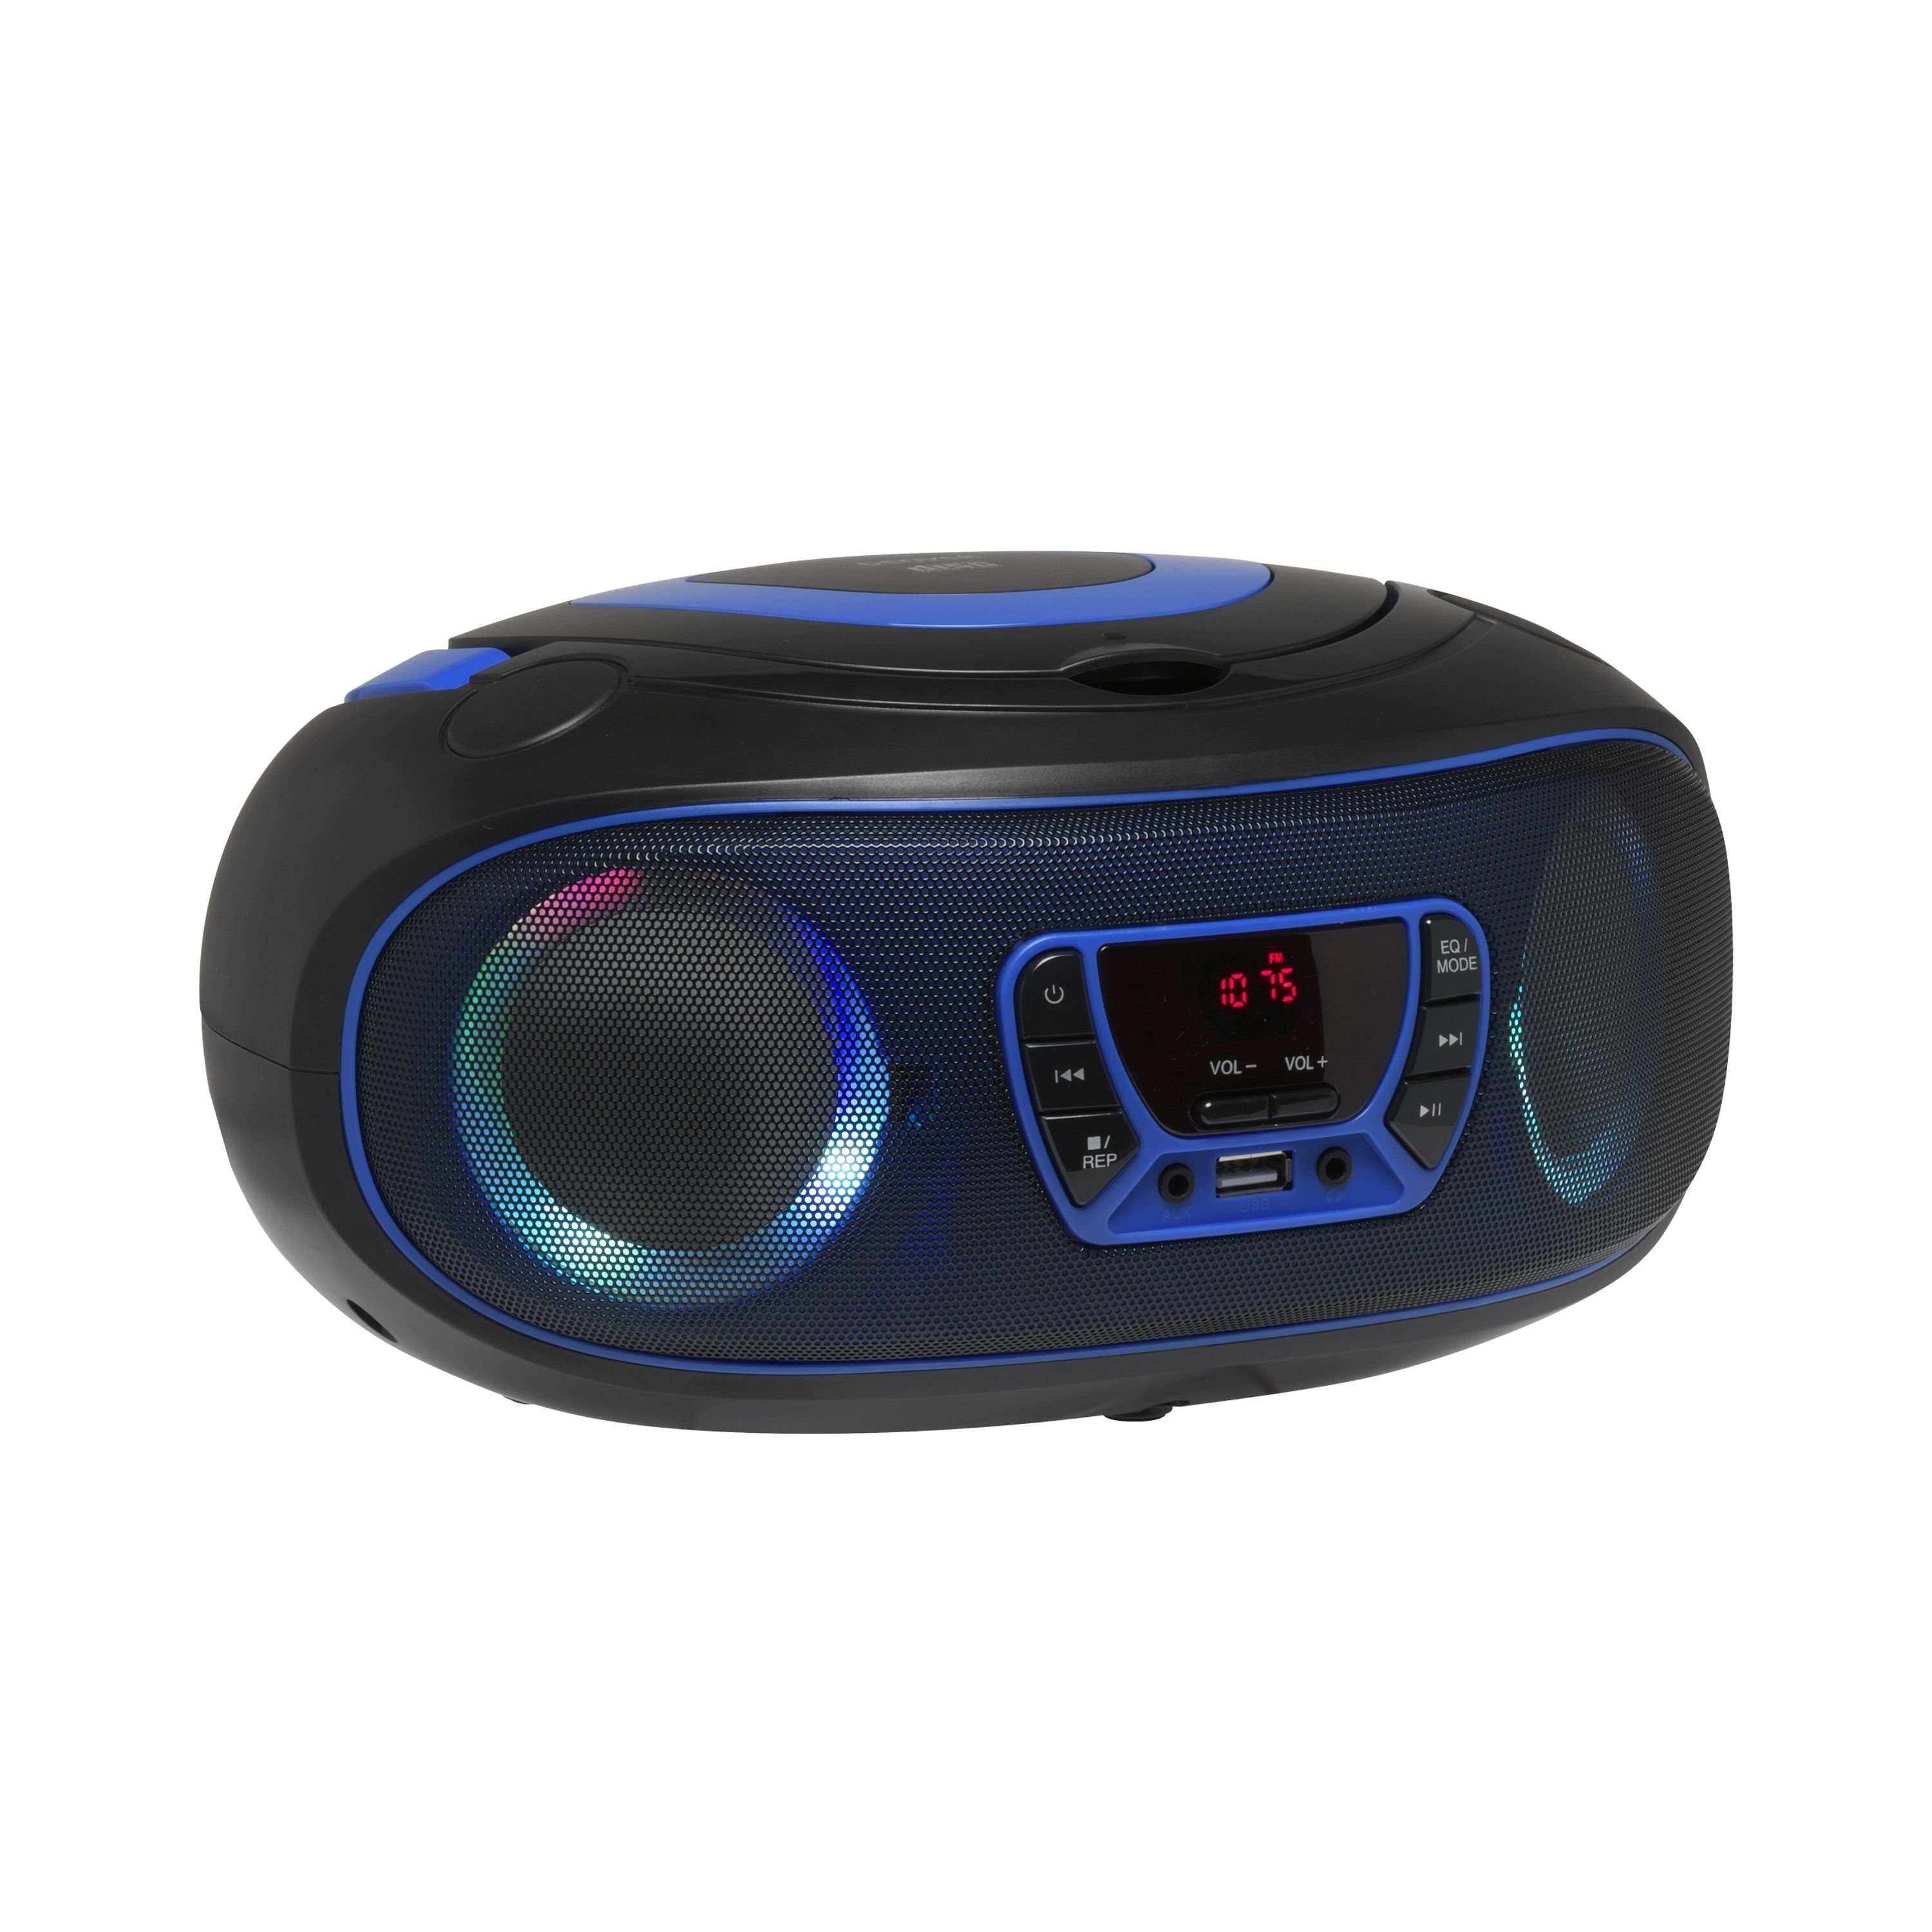 LED Blau TCL-212BT Kopfhörerausgang (Bluetooth, und AUX-IN, Denver USB, Partylicht) Boombox BLUE